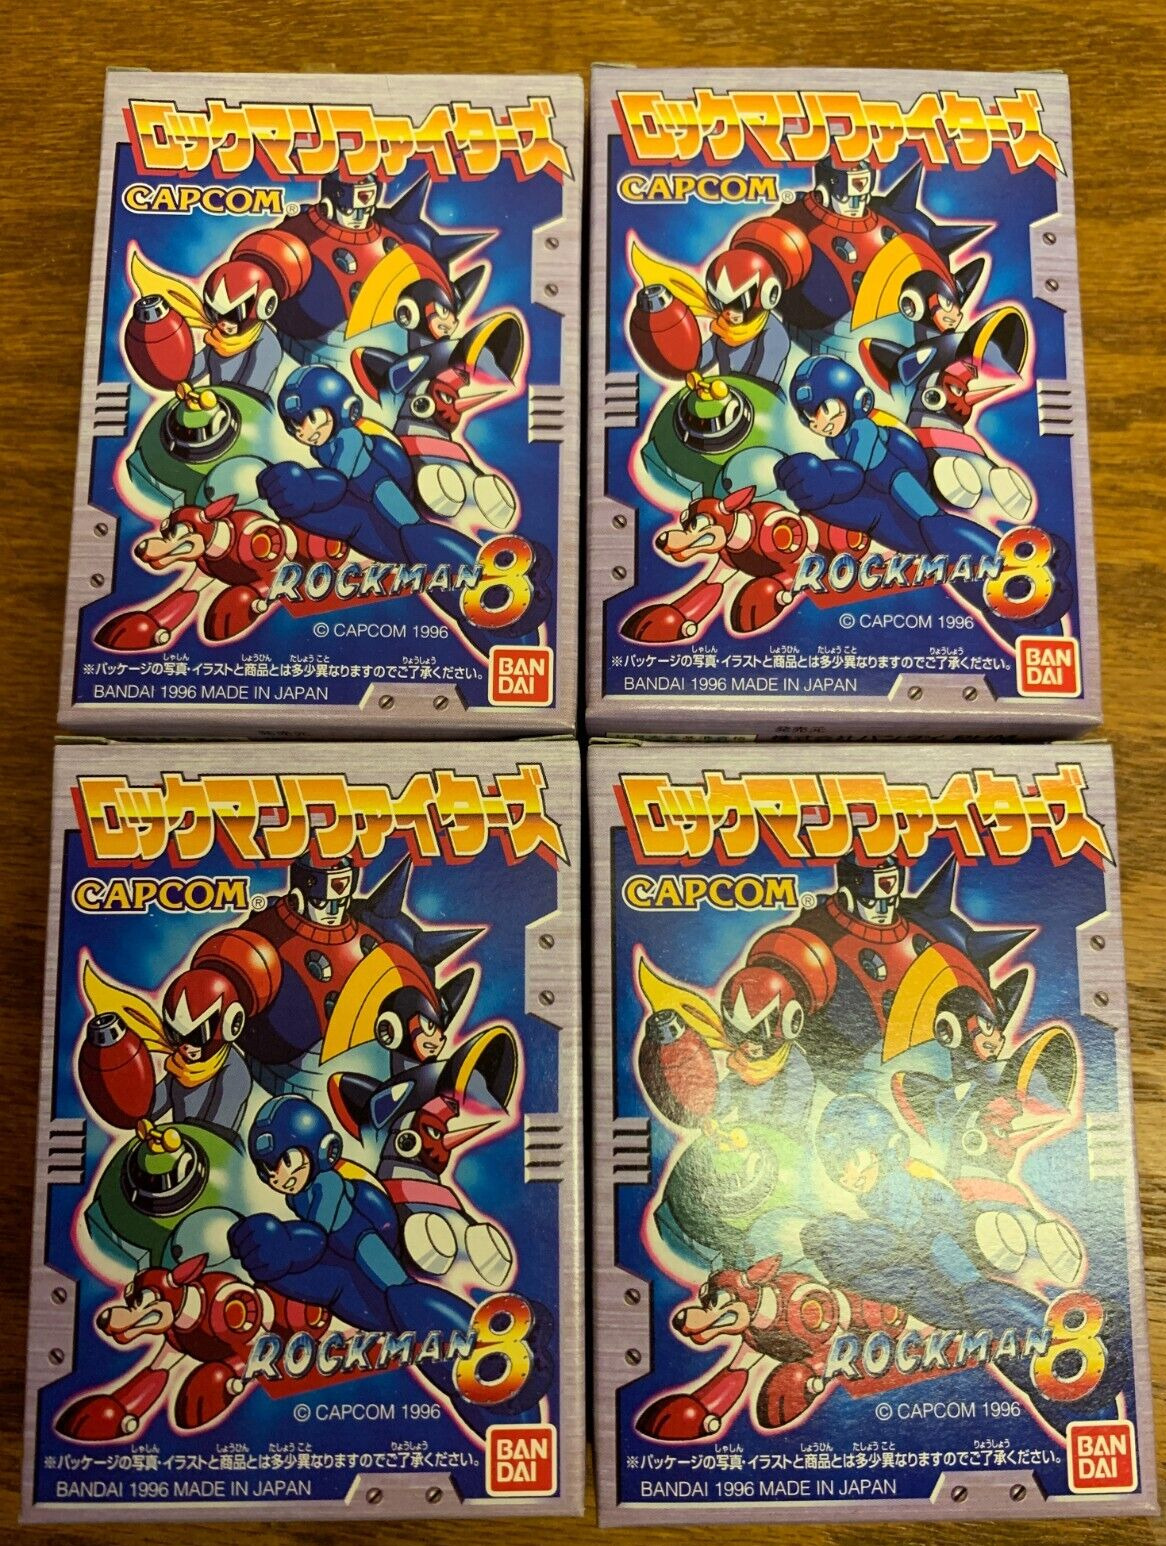 1996 Bandai Capcom Rockman 8 Mega Man Shokugan Toy Lot of 4 (B)